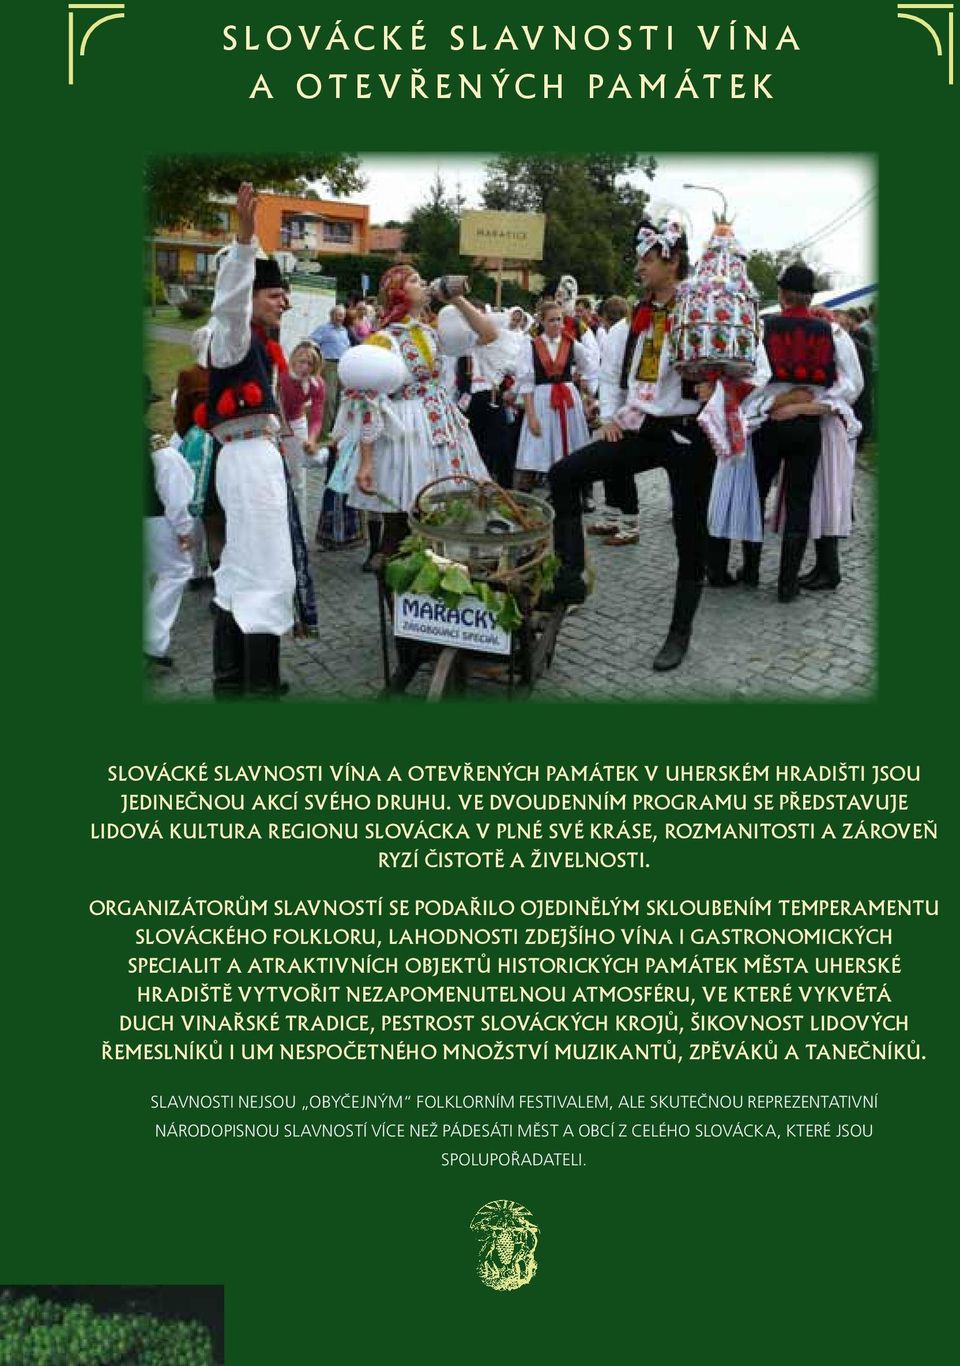 Organizátorům slavností se podařilo ojedinělým skloubením temperamentu slováckého folkloru, lahodnosti zdejšího vína i gastronomických specialit a ATRAKTIVNÍCH objektů historických památek města